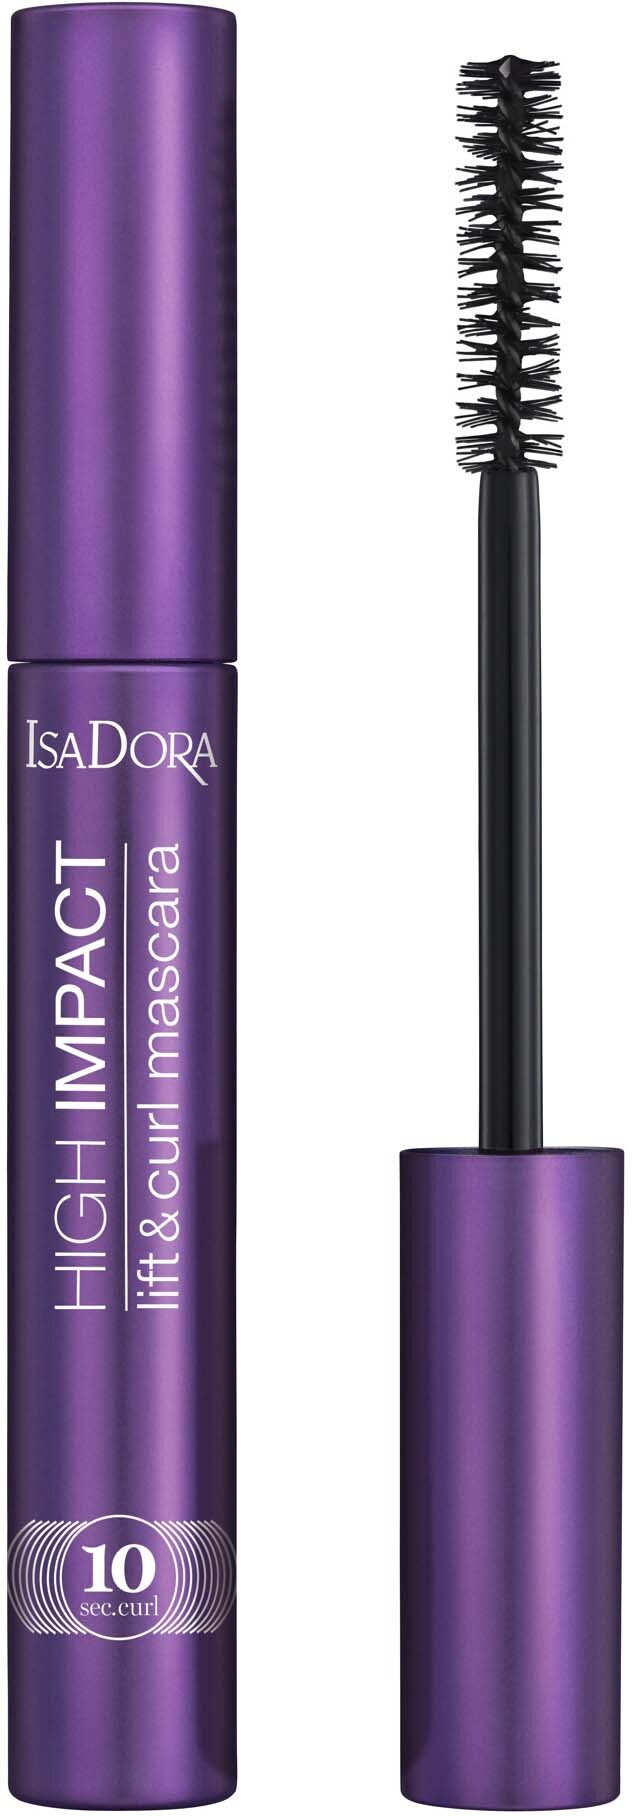 IsaDora 10 Sec High Impact Lift & Curl Mascara Black